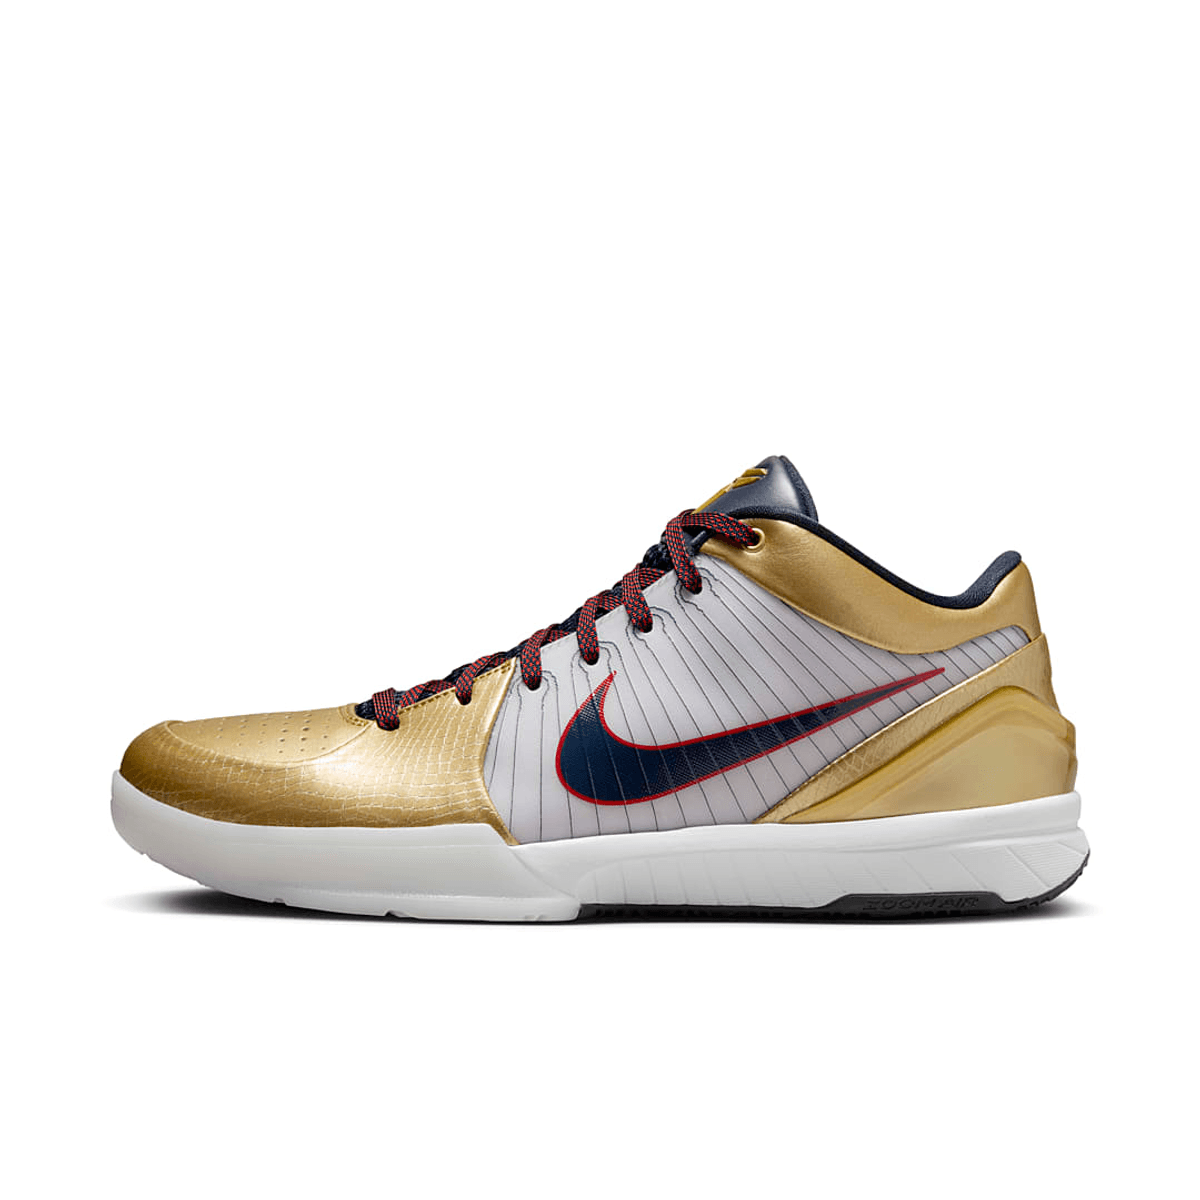 Nike Kobe 4 Protro "Gold Medal" Releases August 2024